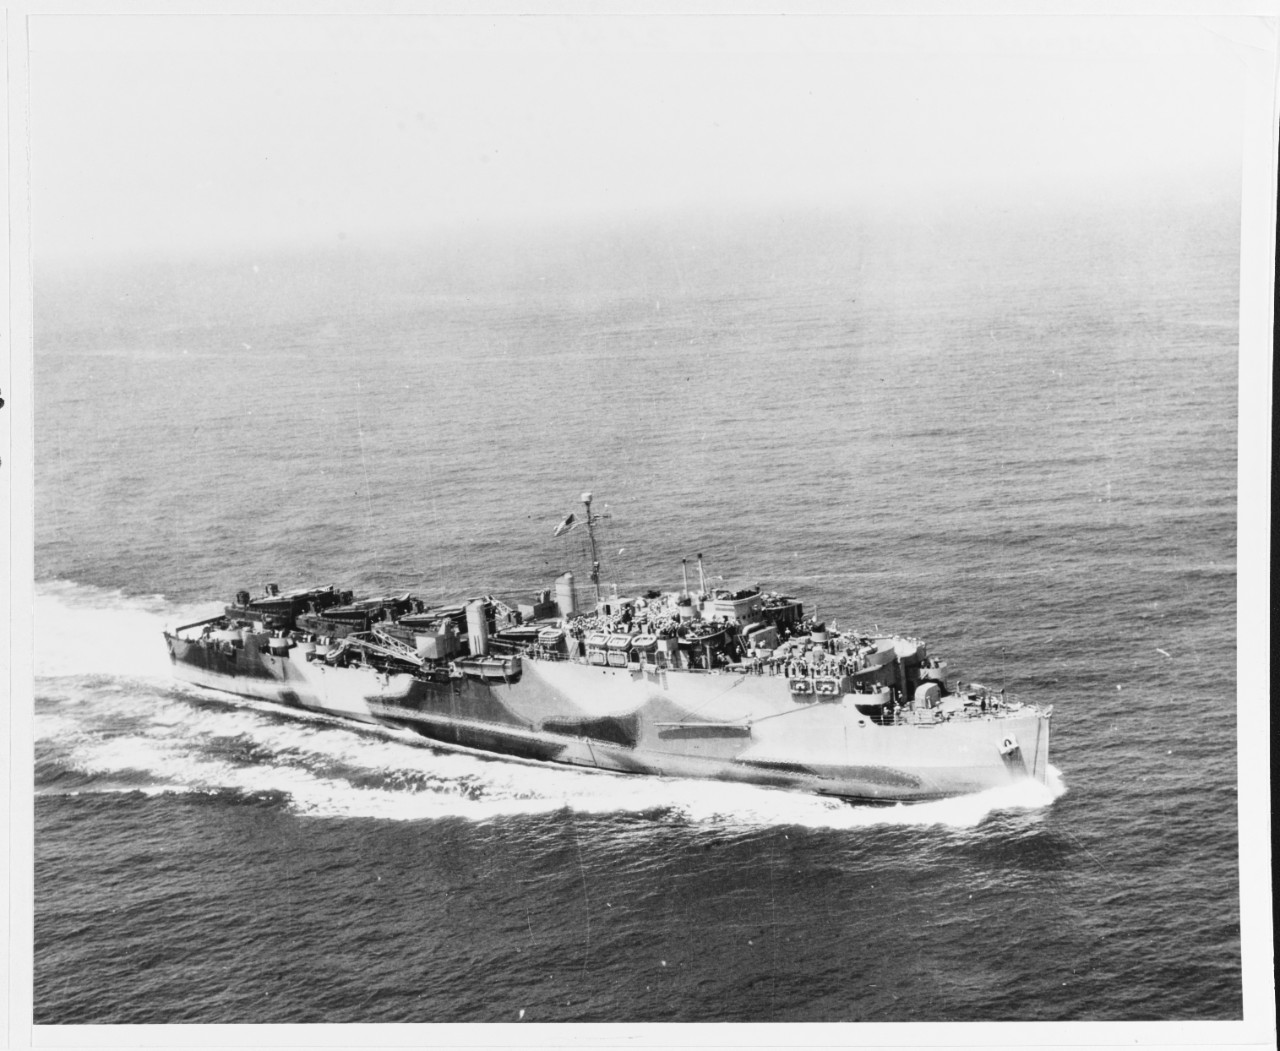 USS RUSHMORE (LSD-14)